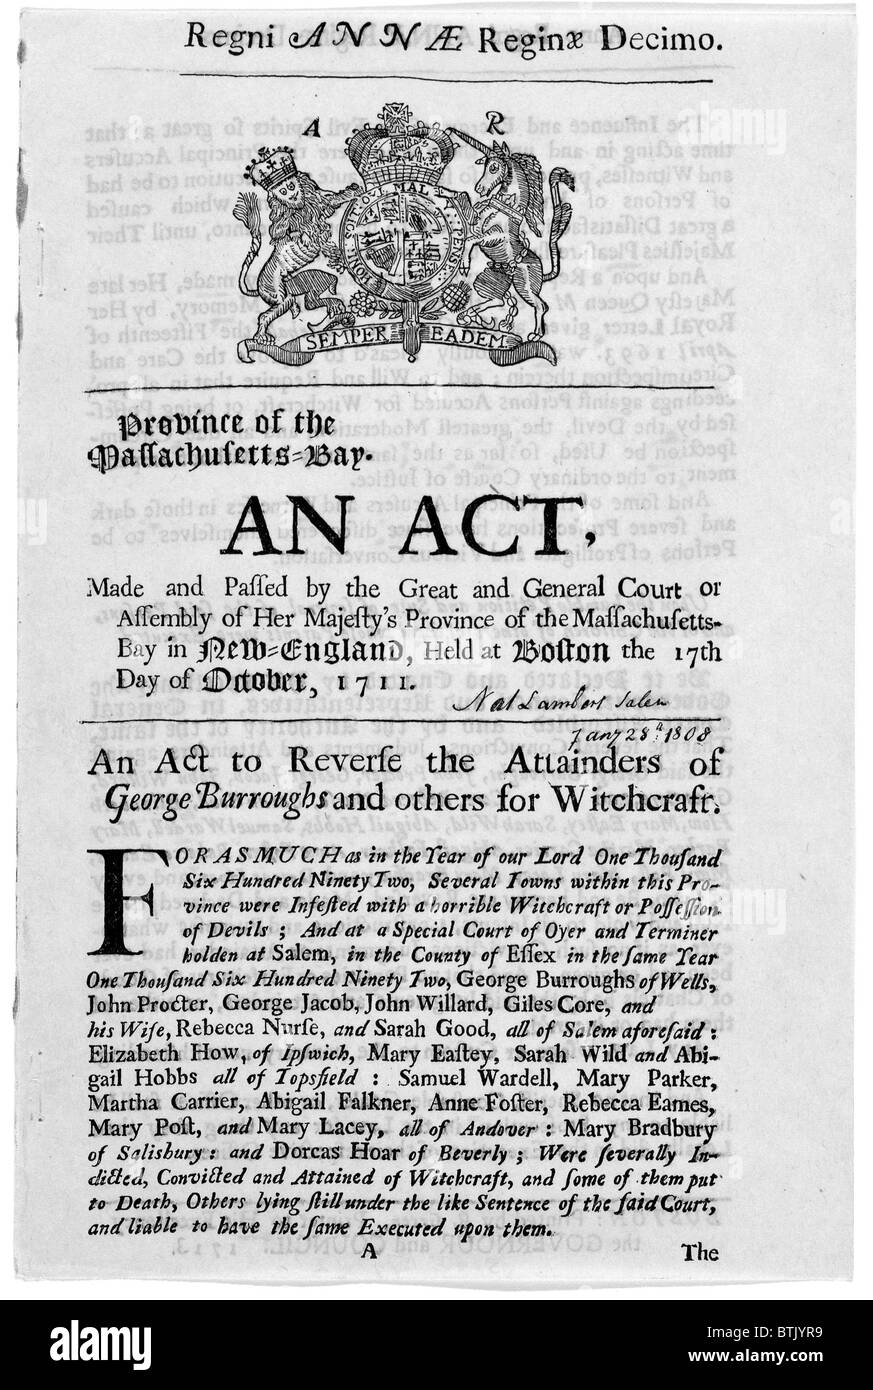 Salem Witch Trials. Ein Akt, der Attainders von u.a. George Burroughs Hexerei rückgängig zu machen. Boston, Massachusetts Gesetzgebung im Jahre 1711 wieder hergestellt, die Rechte und gute Namen derer, die angeklagt worden war. 1713. Stockfoto